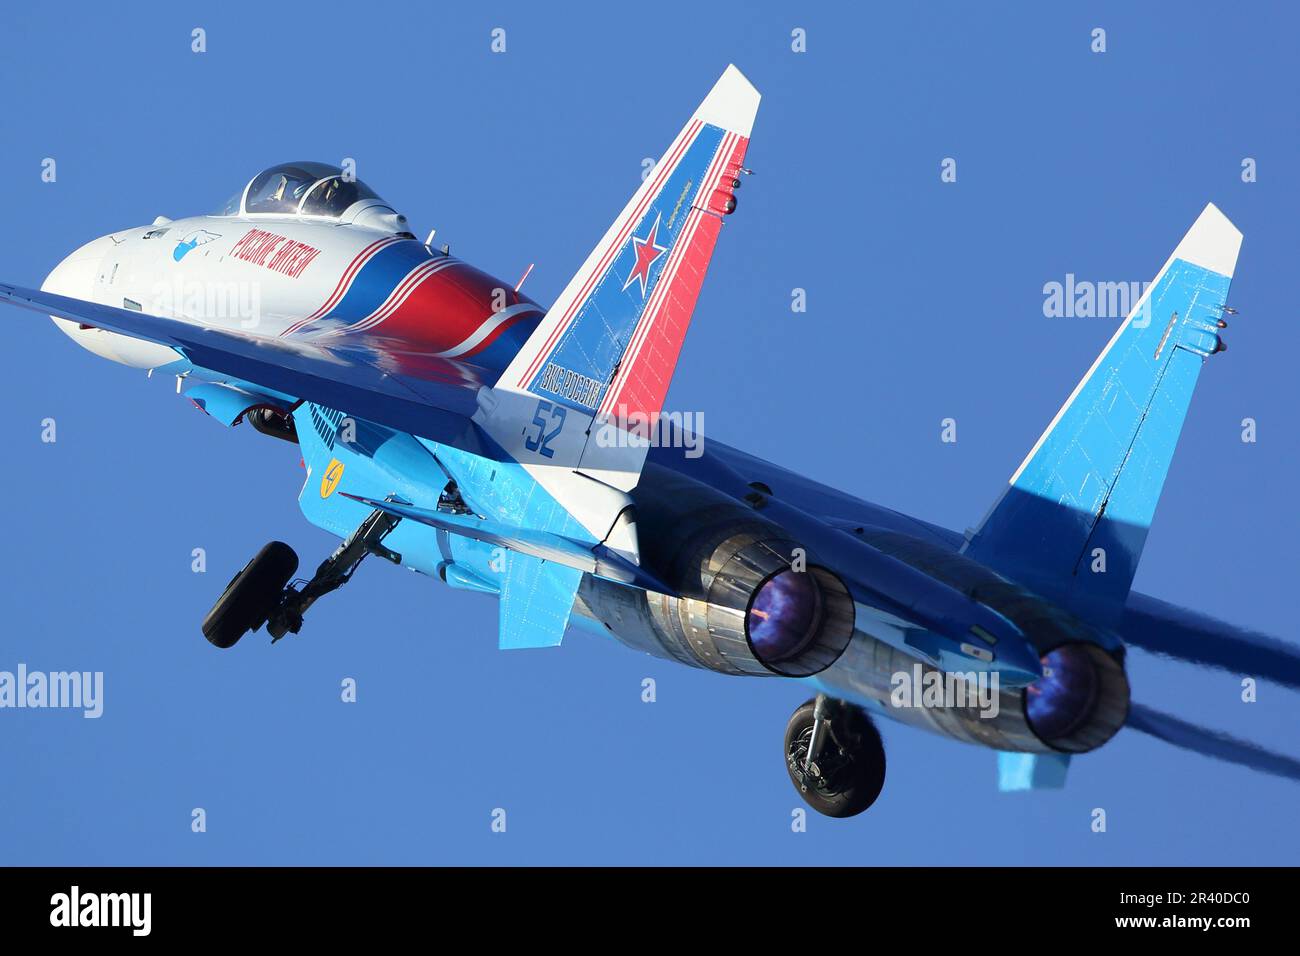 Un chasseur à réaction su-35S de l'équipe russe de voltige de l'Armée de l'Air russe qui prend son envol. Banque D'Images